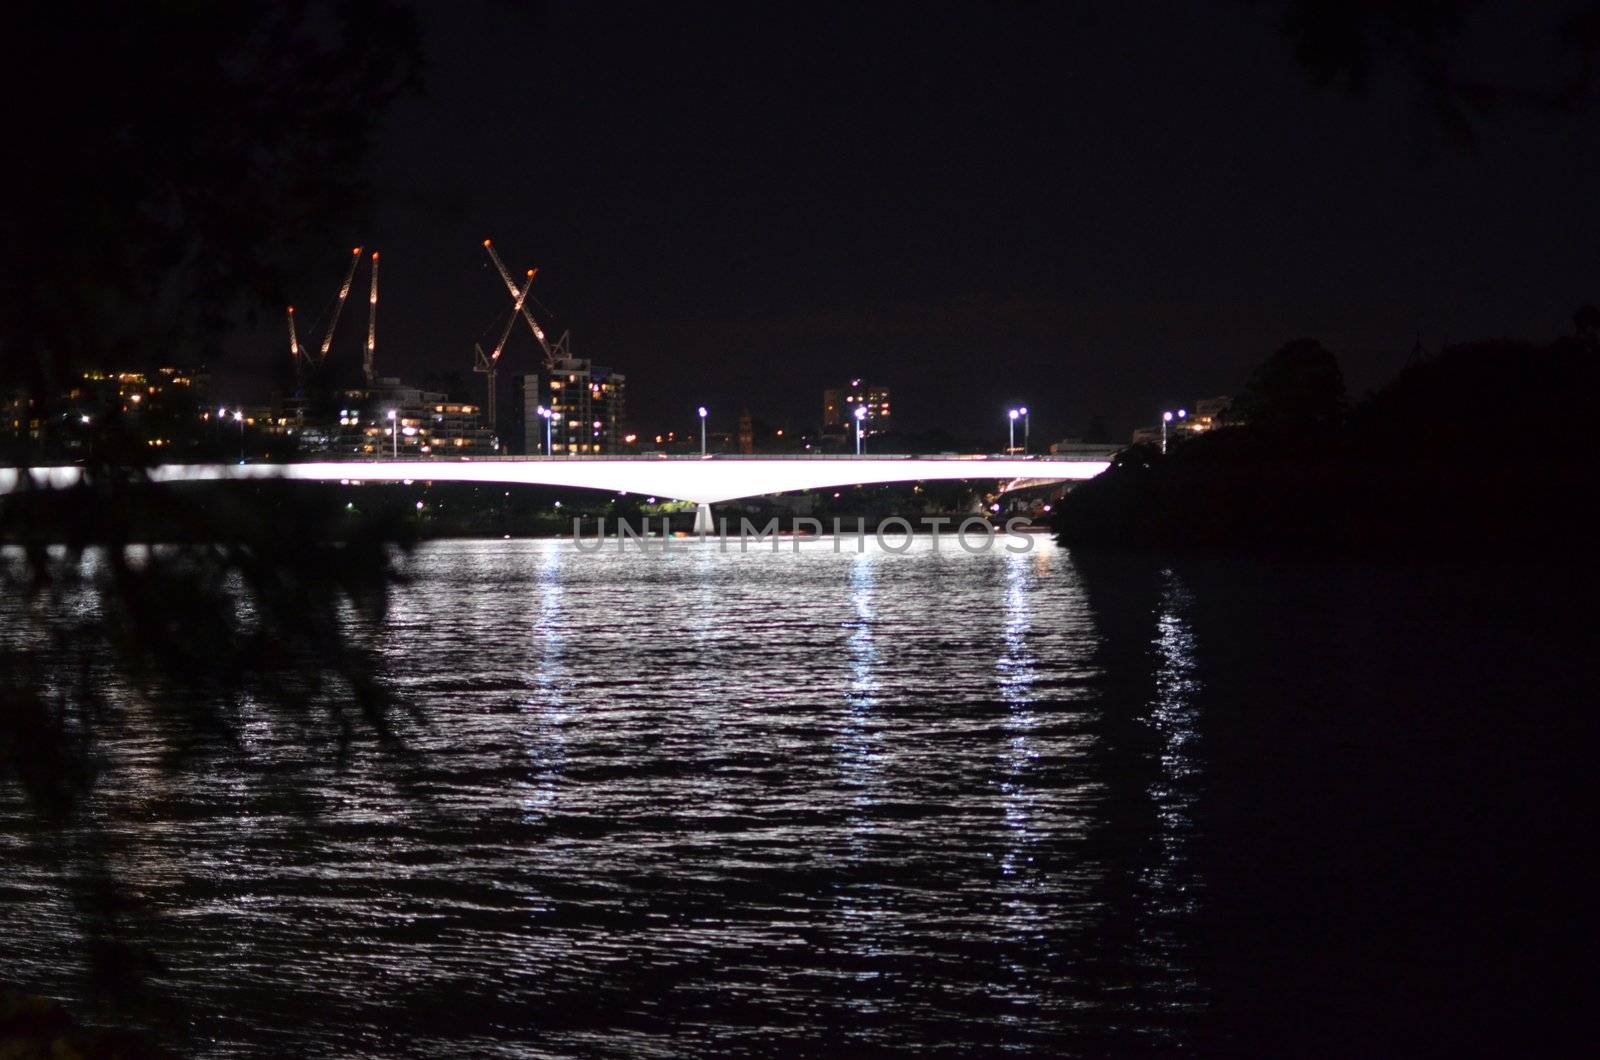 The Riverside Expressway Bridge crossing the Brisbane River. Photo taken at night from Kangaroo Point.